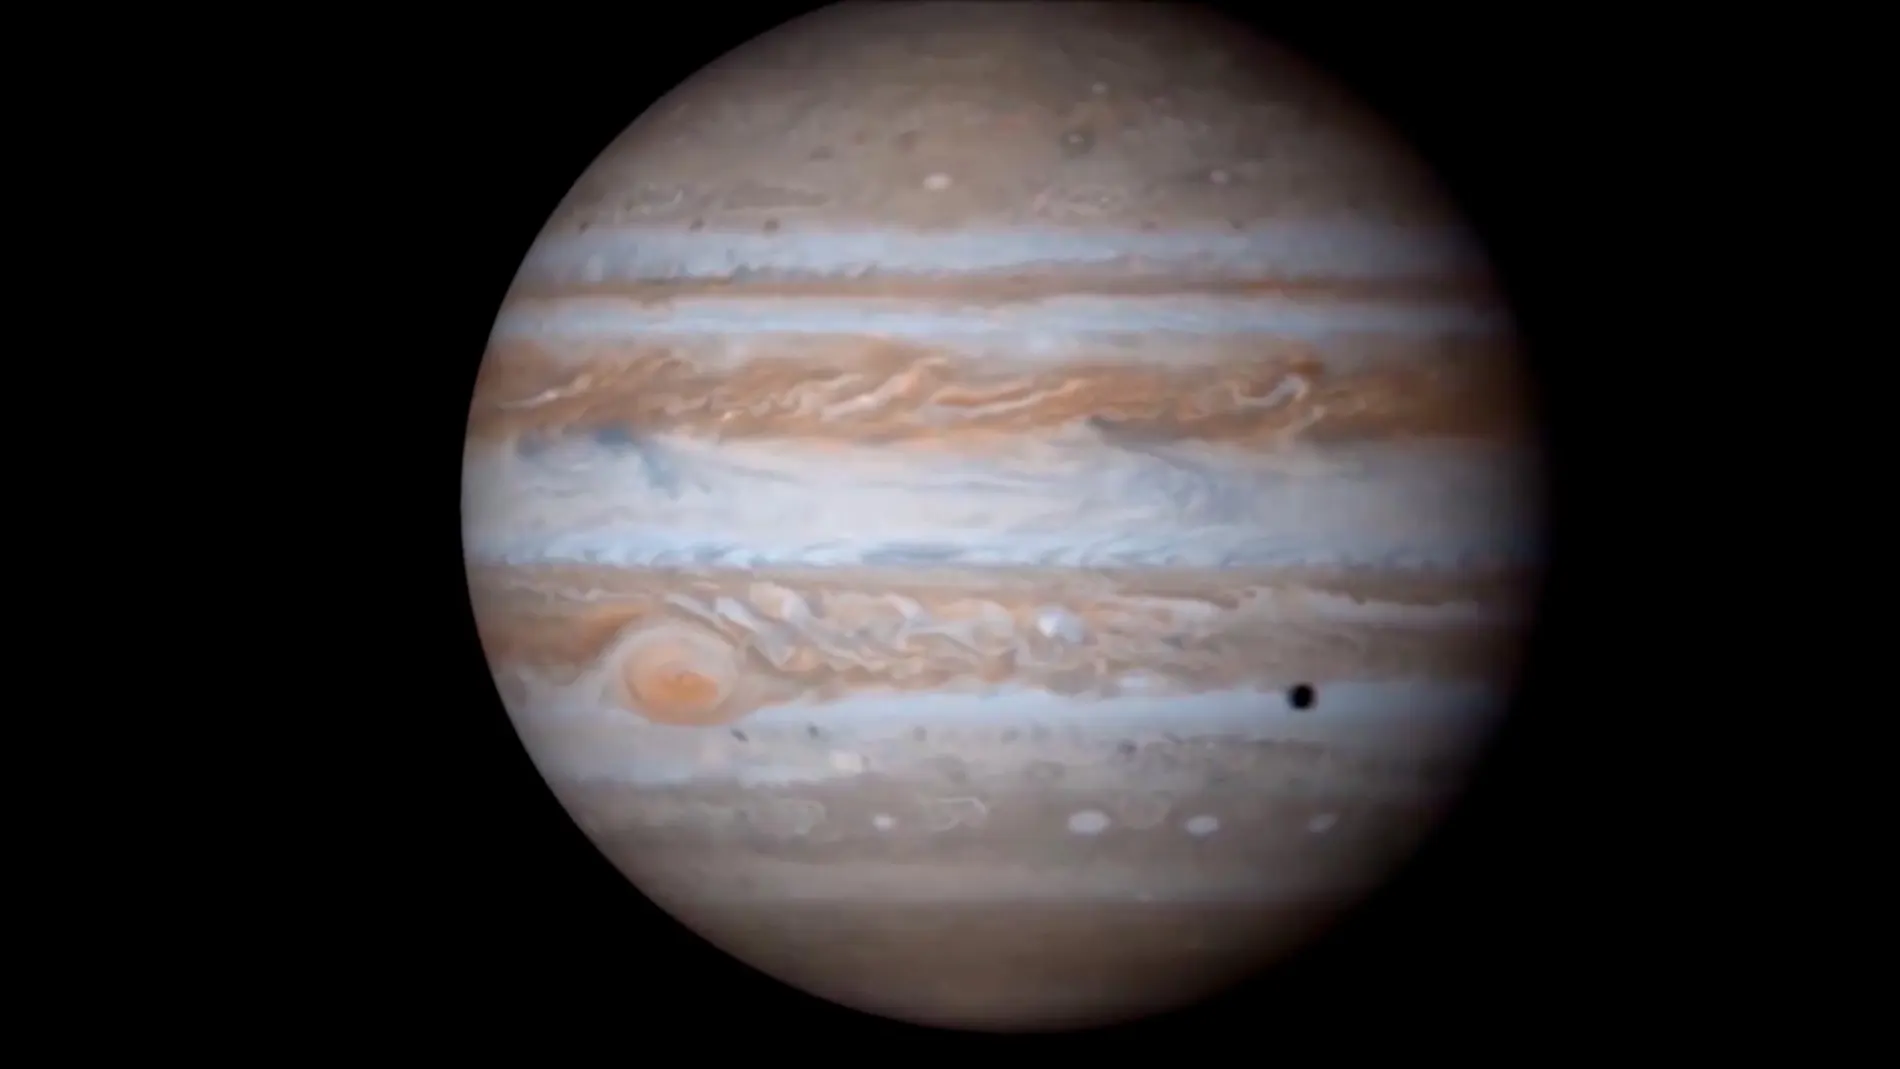 Júpiter será visible a simple vista la noche del 10 de Junio